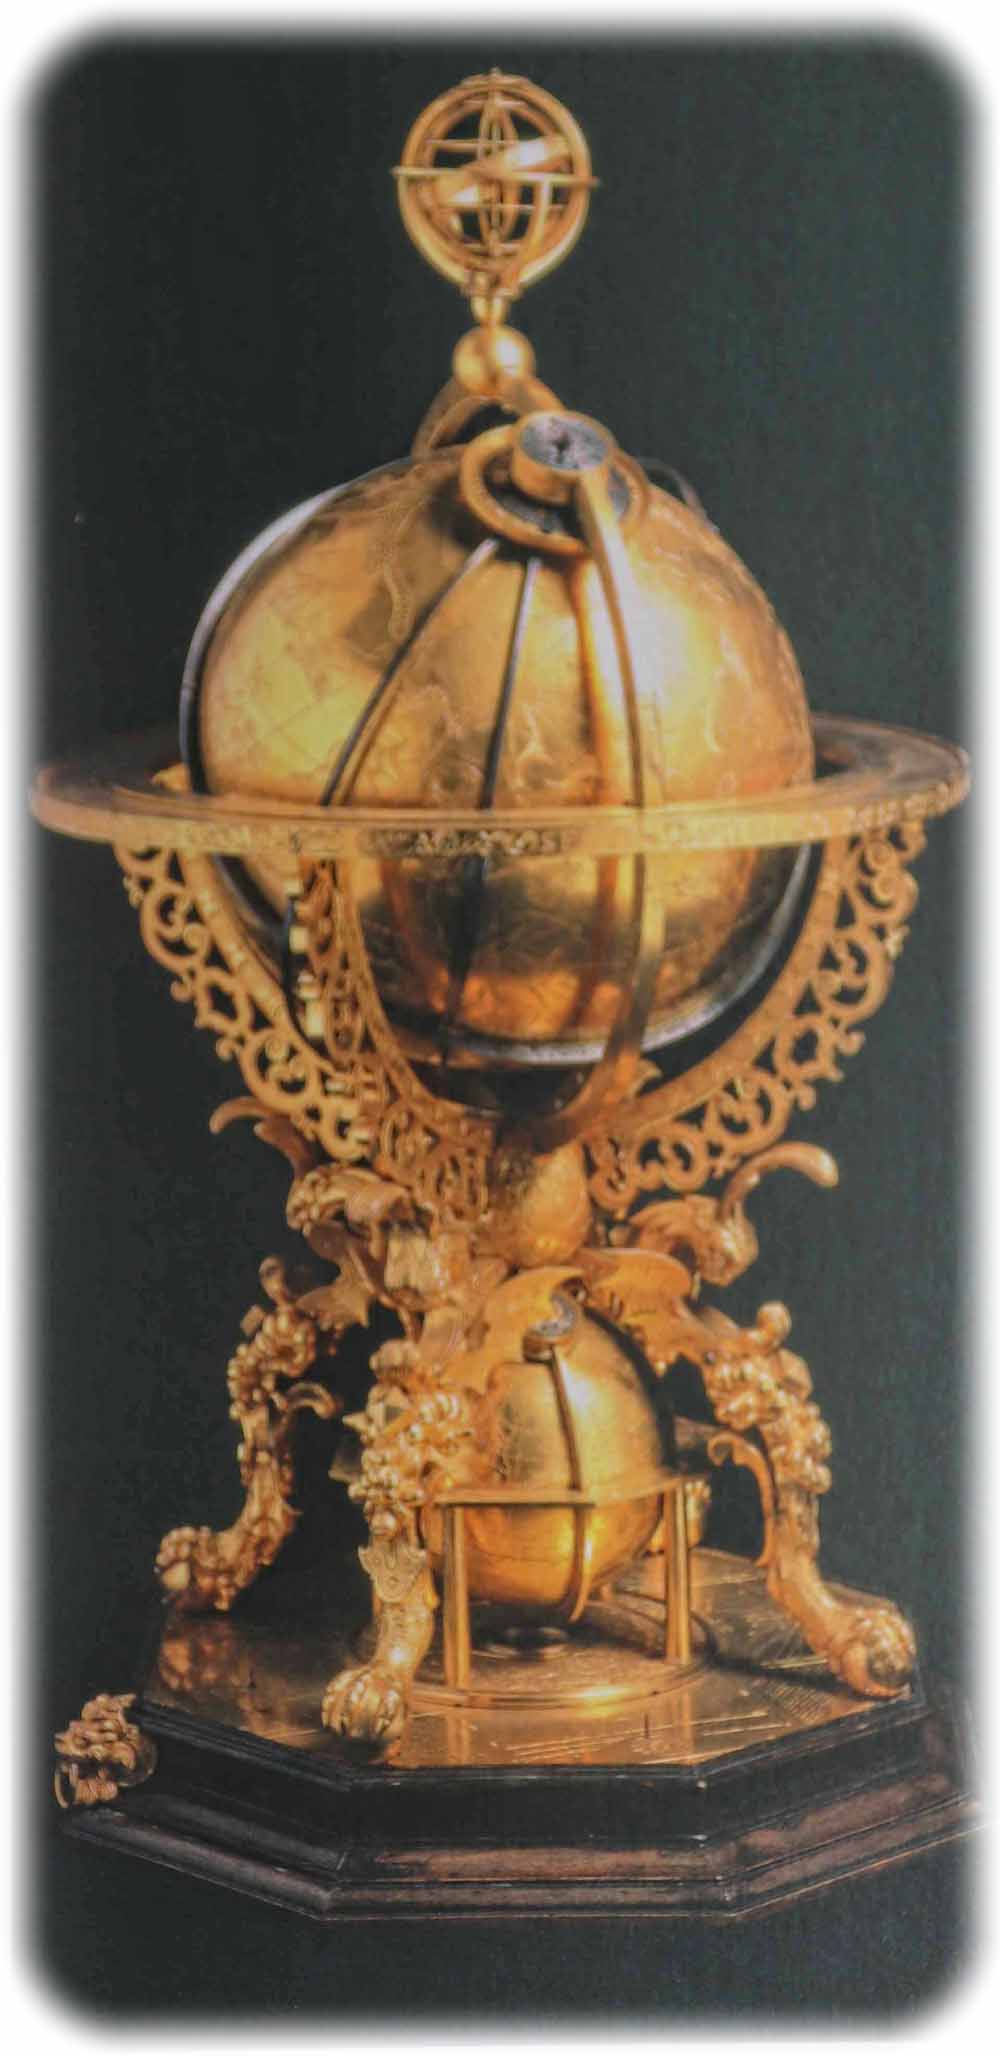 Mechanischer Himmelsglobus von Johannes Reinhold aus Dresden (1586) aus Messing, Kupfer und Palisander. Repro (CR) aus: "Mathematisch-Physikalischer Salon", Dresden